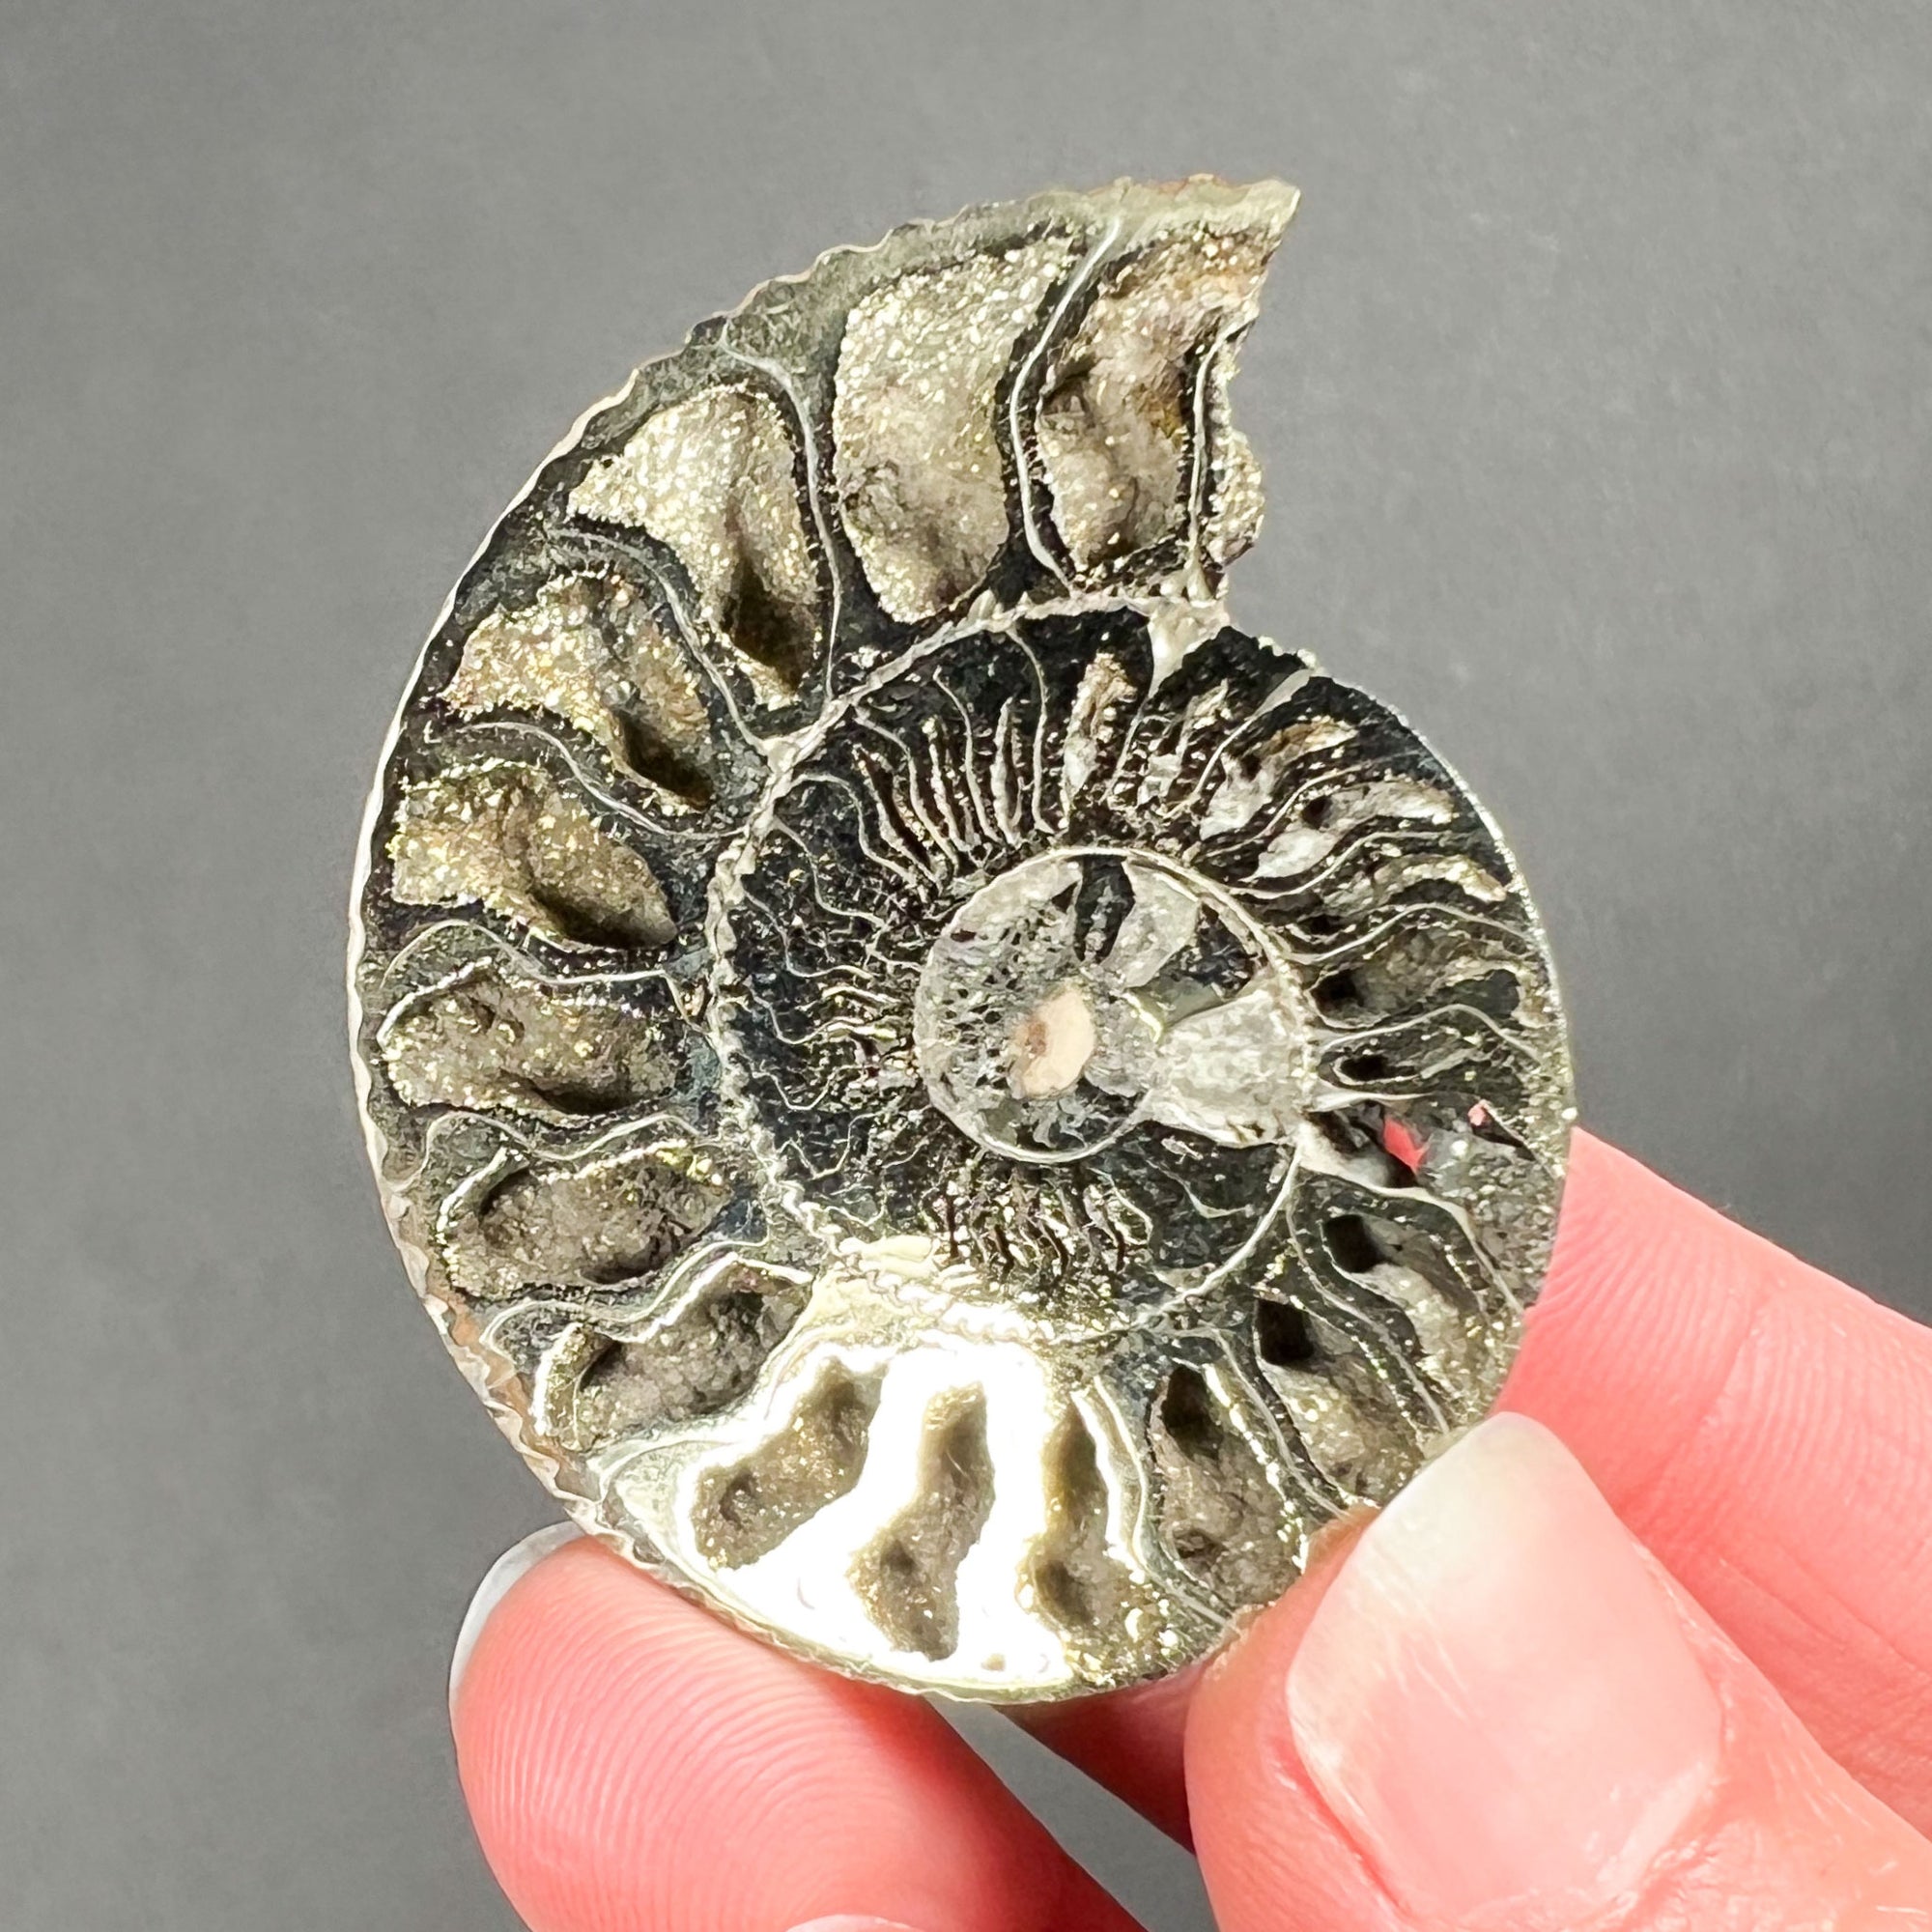 Pyritized Ammonite Shell